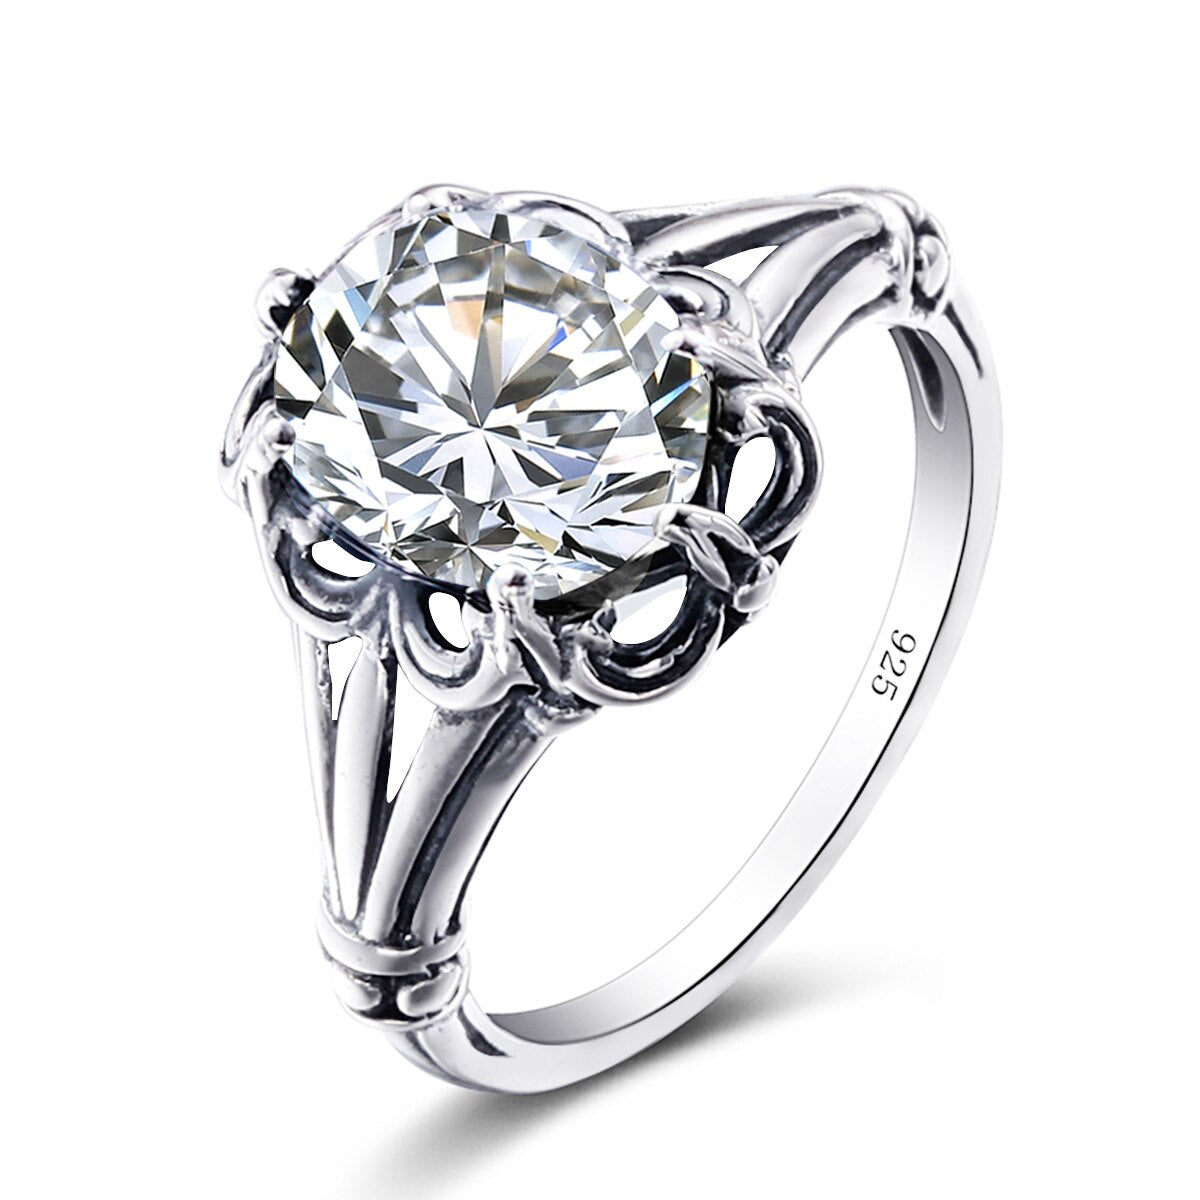 100% 925 Sterling Silver Rings Oval Design Garnet Bohemian Handmade Victoria Wieck Rings For Women Fine Jewelry Zirconia